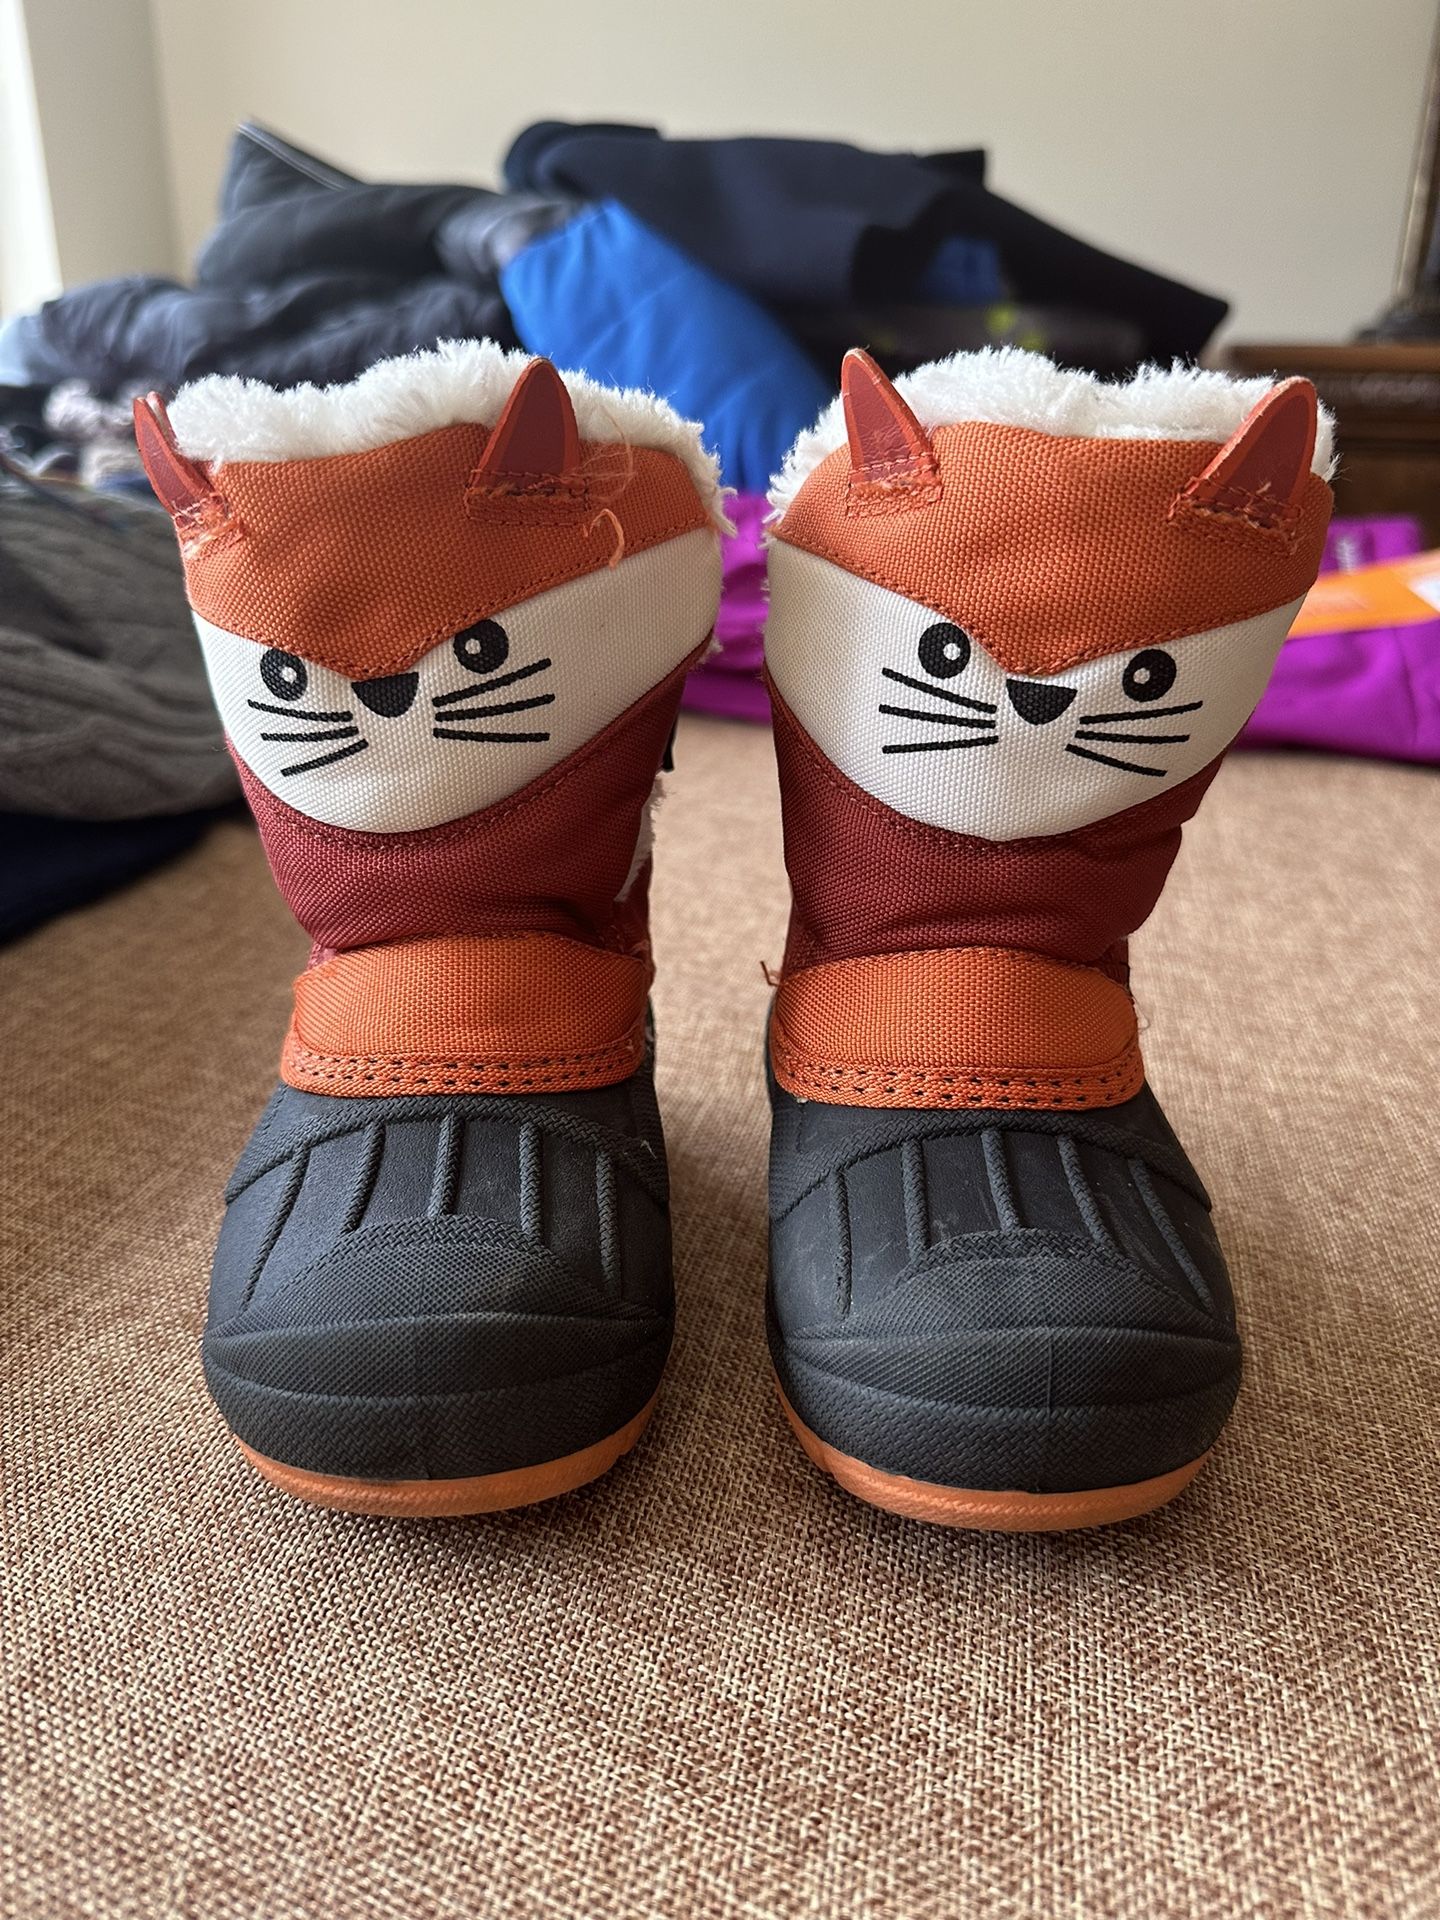 Cat & Jack Snow Boots Size 5T